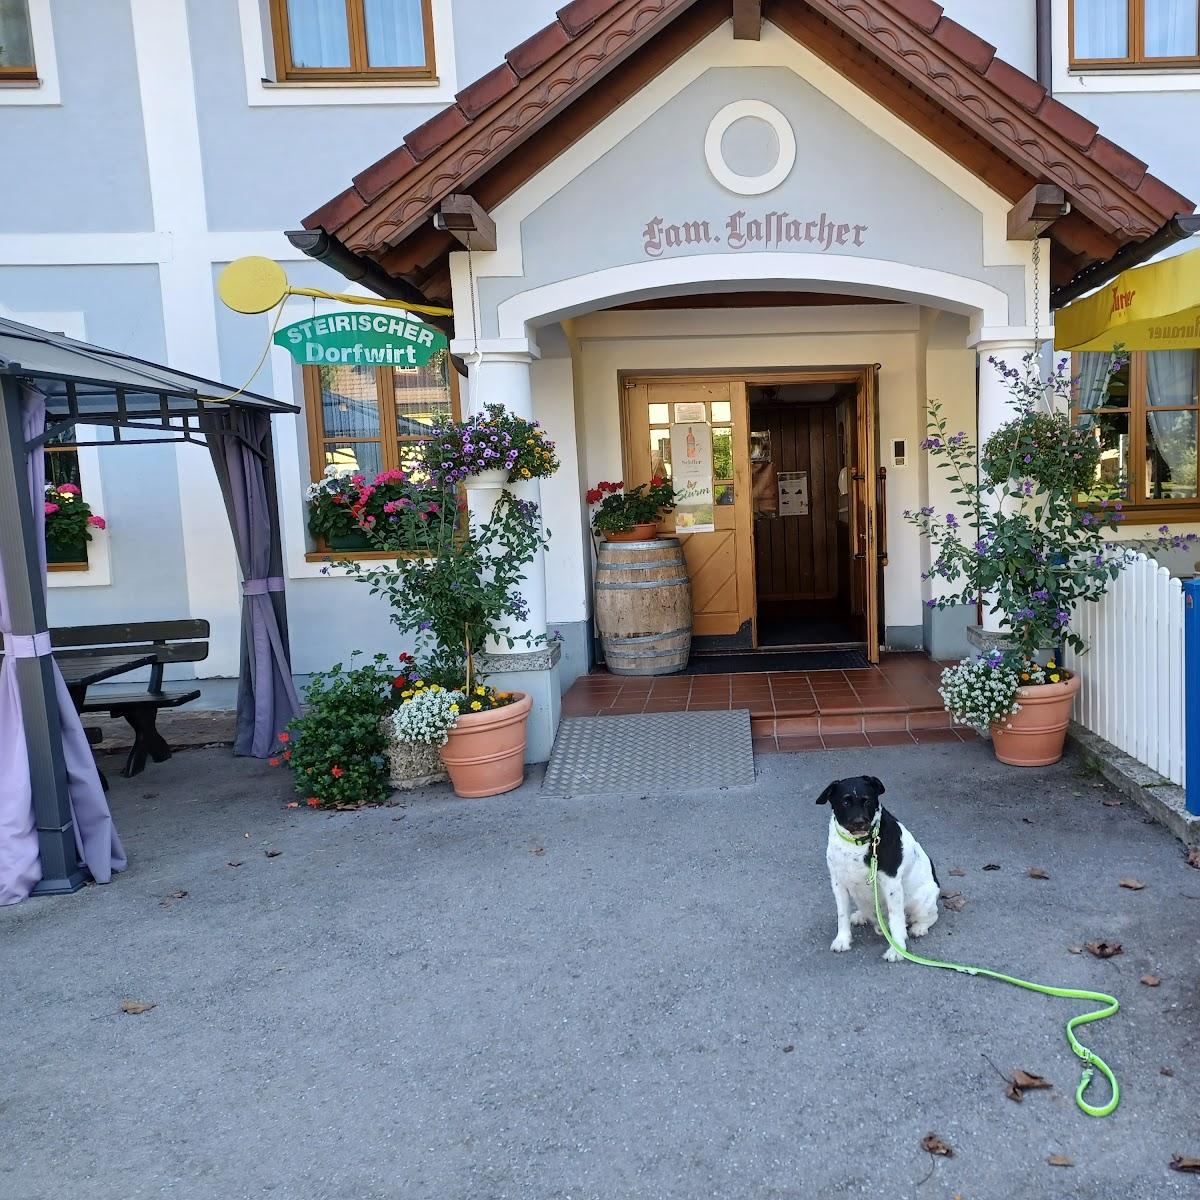 Restaurant "Gasthof Murtalerhof" in Steindorf